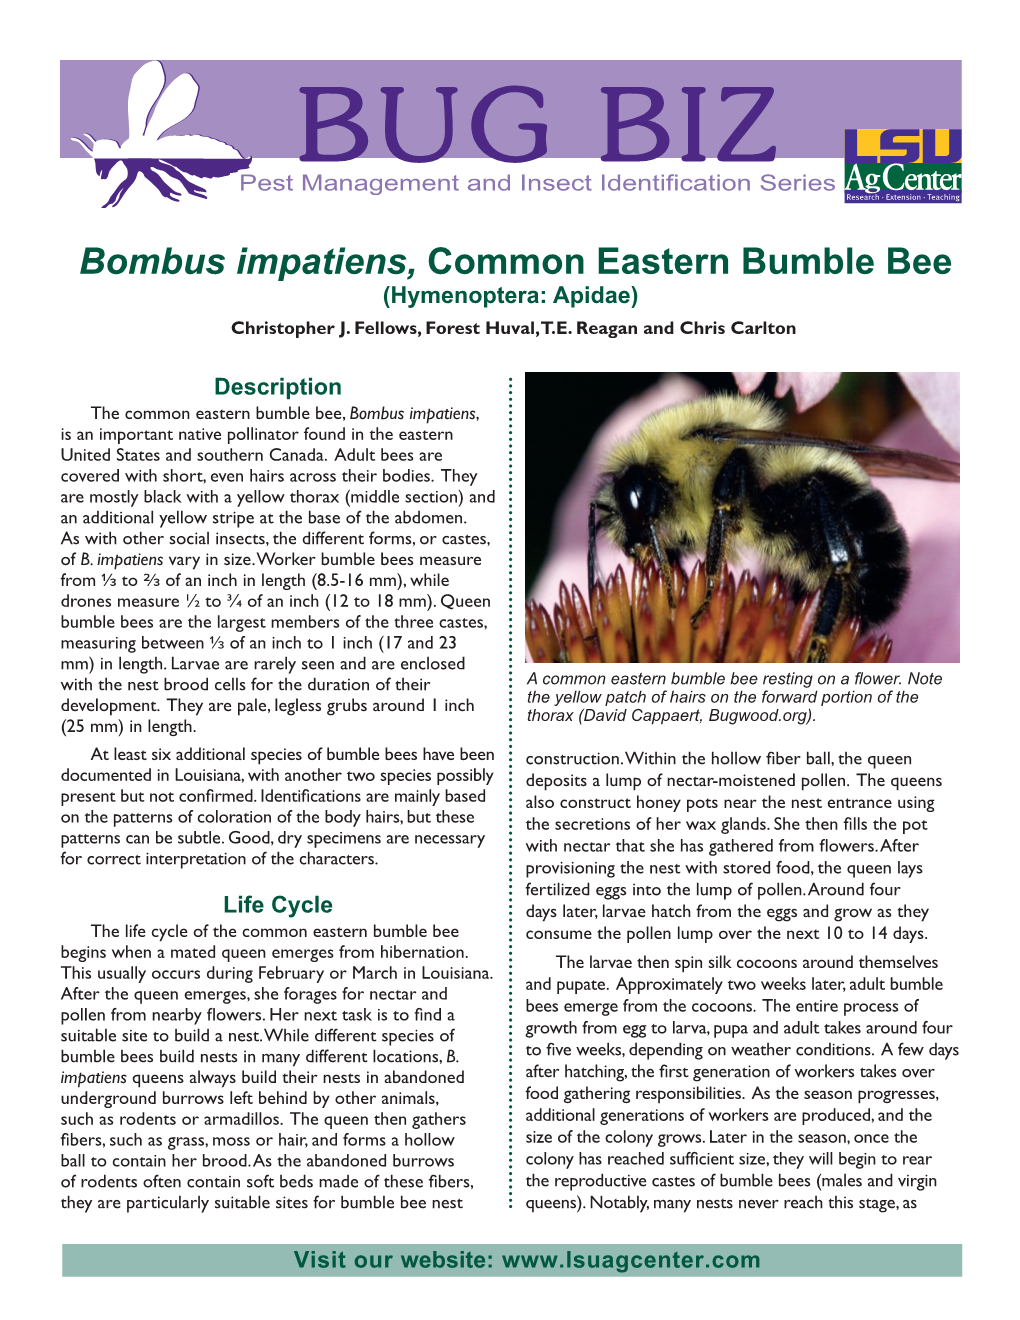 Bombus Impatiens, Common Eastern Bumblebee